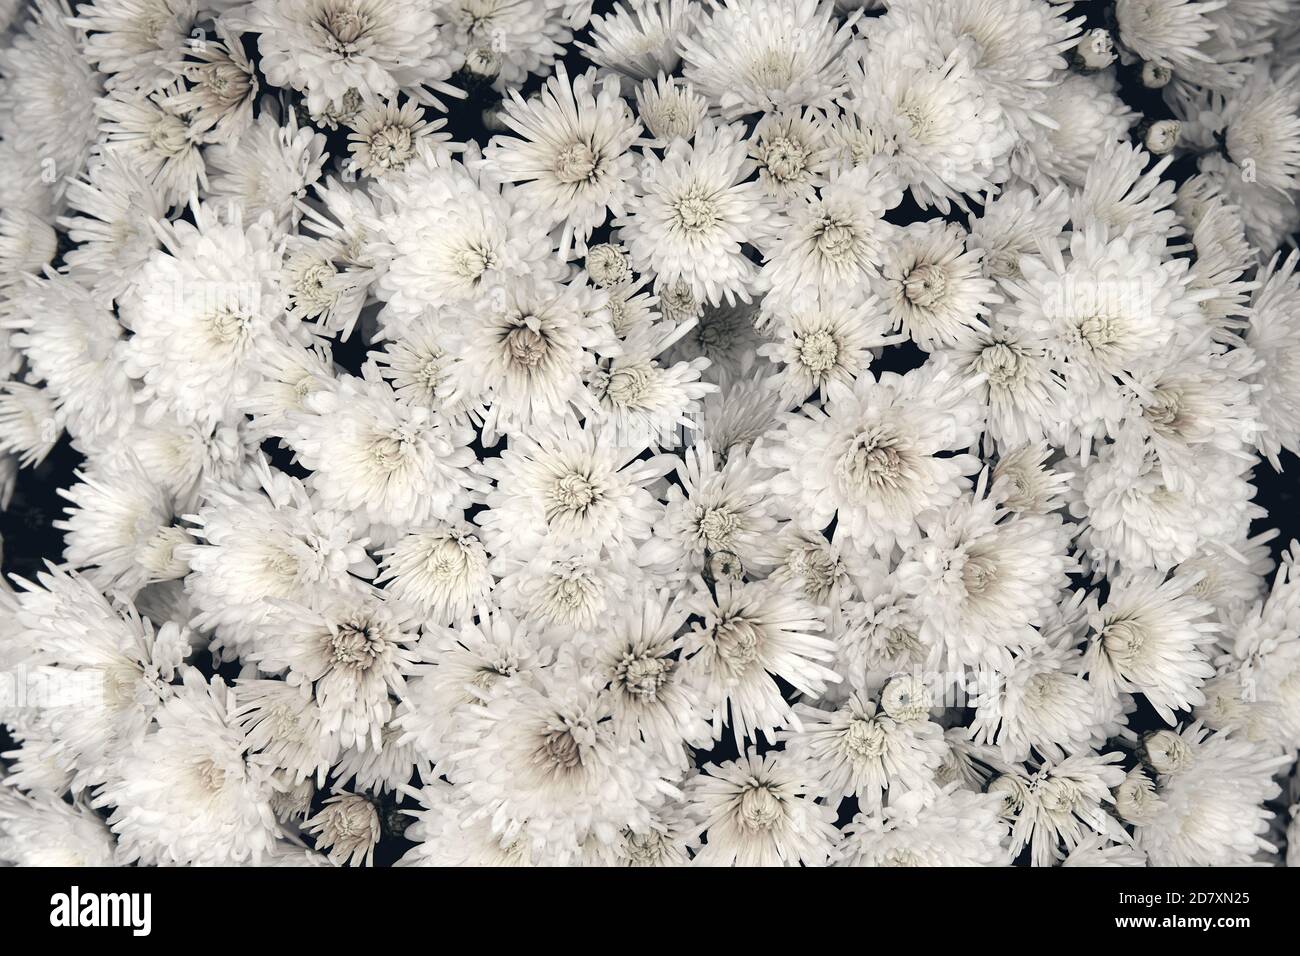 Fiore di crisantemo con foglie motivo floreale colorato sfondo come carta. Primo piano piante di crisantemo bianco fioriscono in un negozio di fiori. Autunno Foto Stock